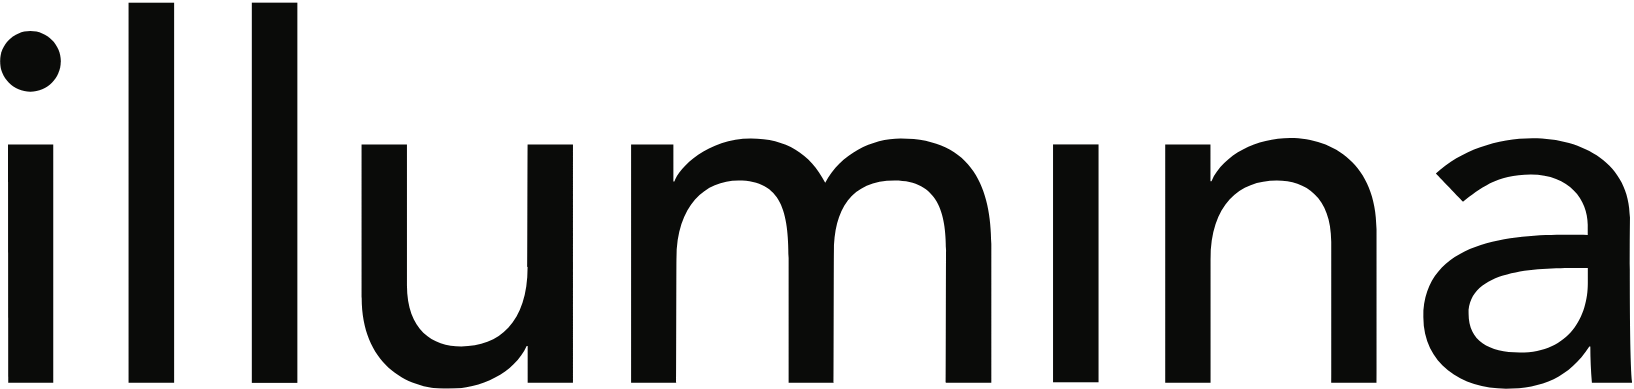 Illumina logo large (transparent PNG)